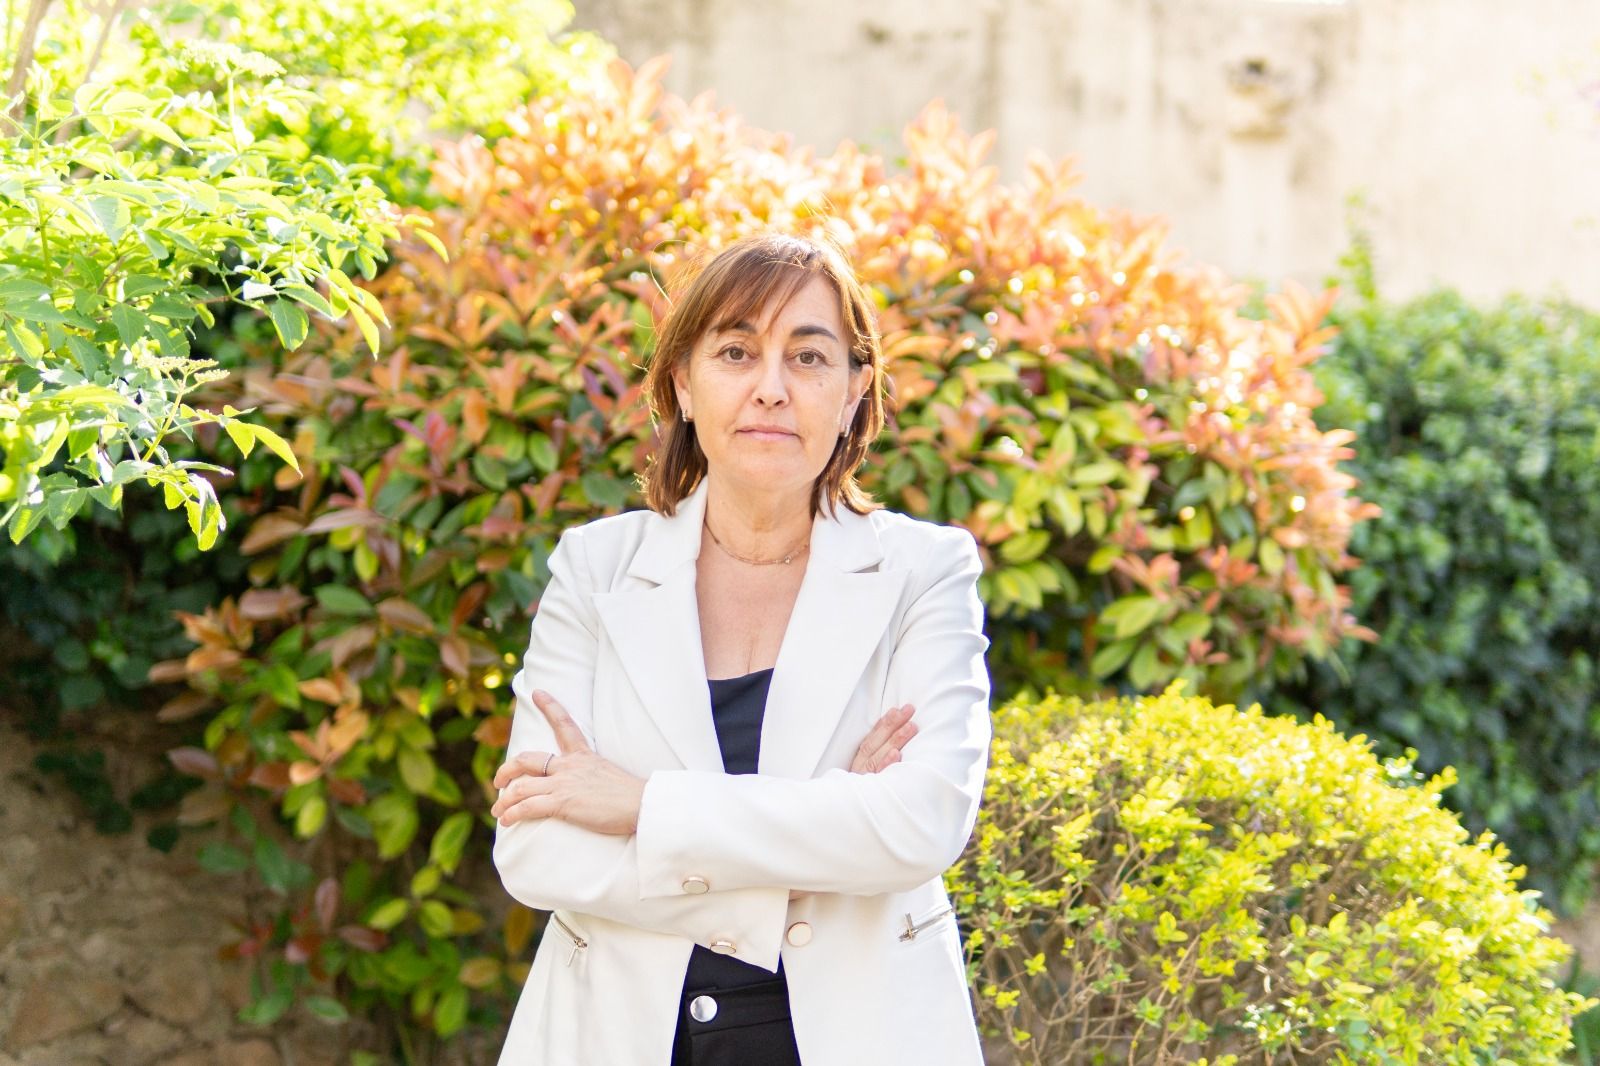 Sílvia Paneque és la cap de llista del PSC a la demarcació de Girona